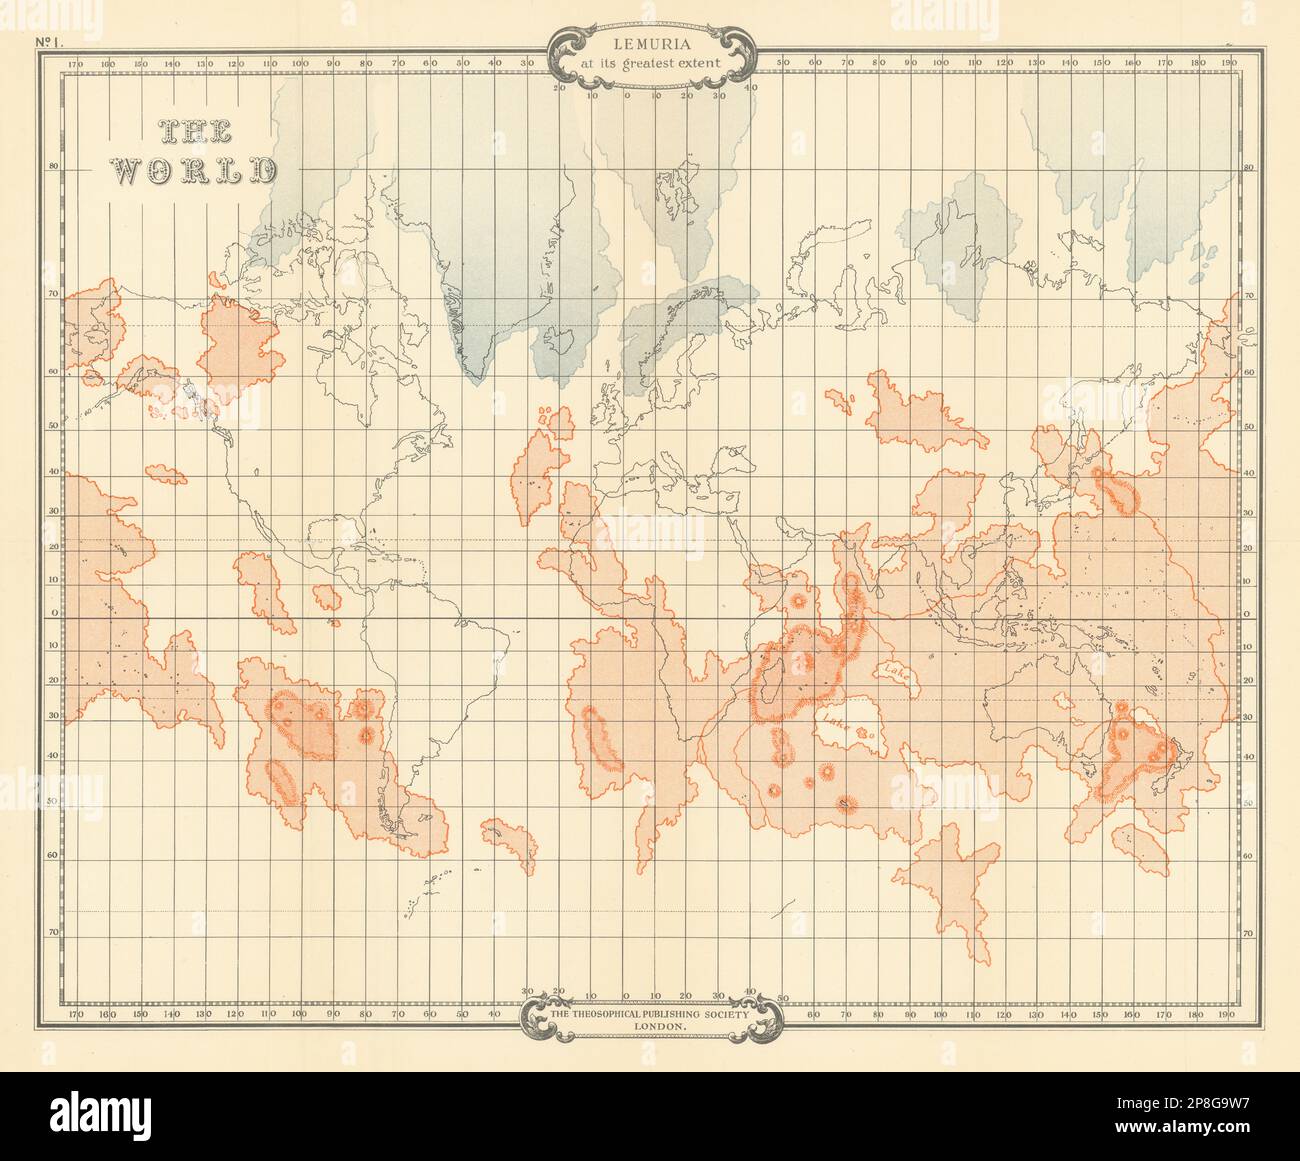 Le monde montre la Lemurie dans sa plus grande mesure. SCOTT-ELLIOT 1925 ancienne carte Banque D'Images